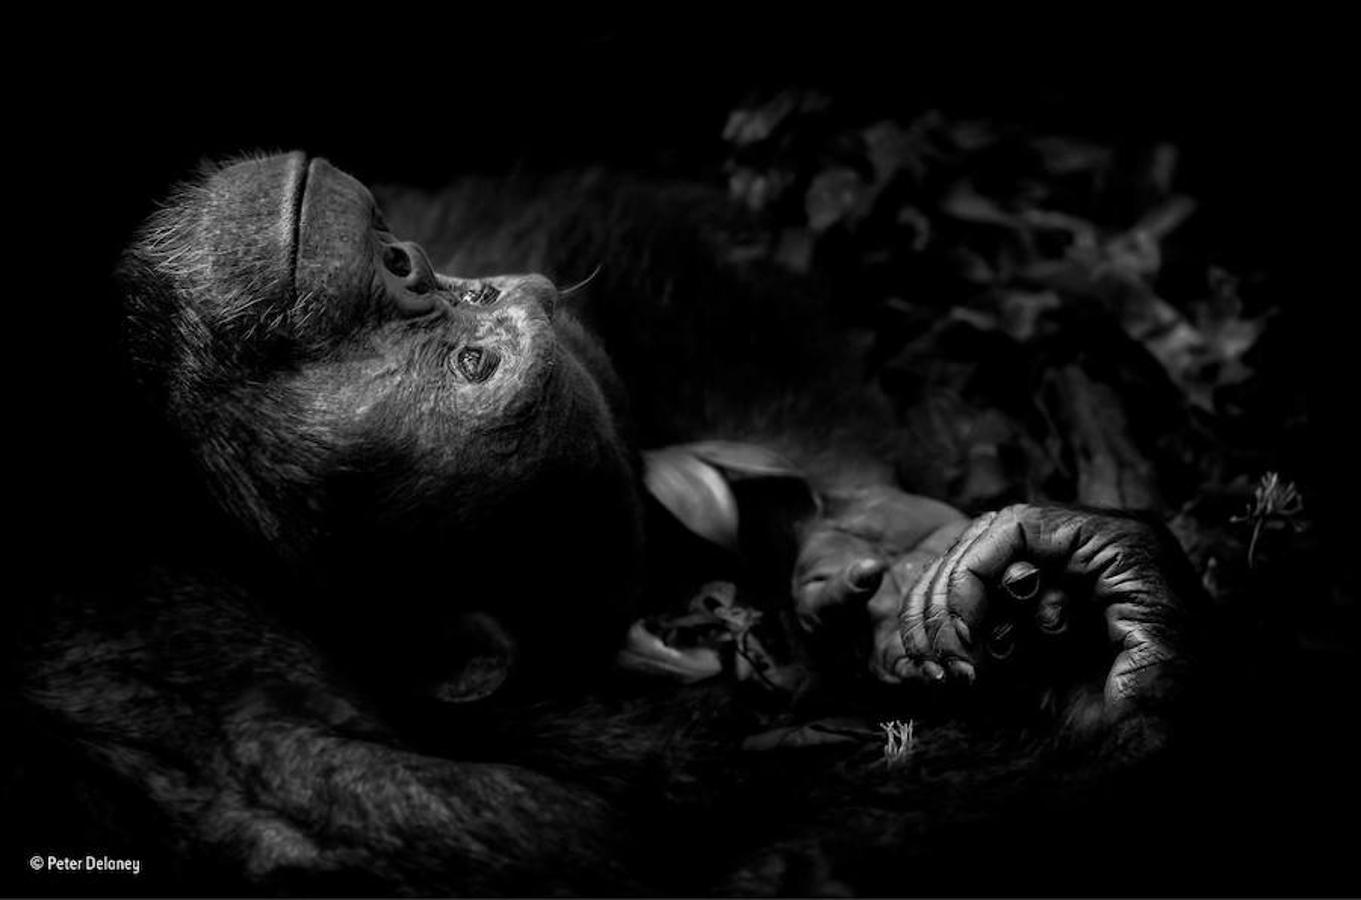 Este chimpancé fotografiado en Uganda ha ganado en la categoría de retratos animales. Peter Delaney